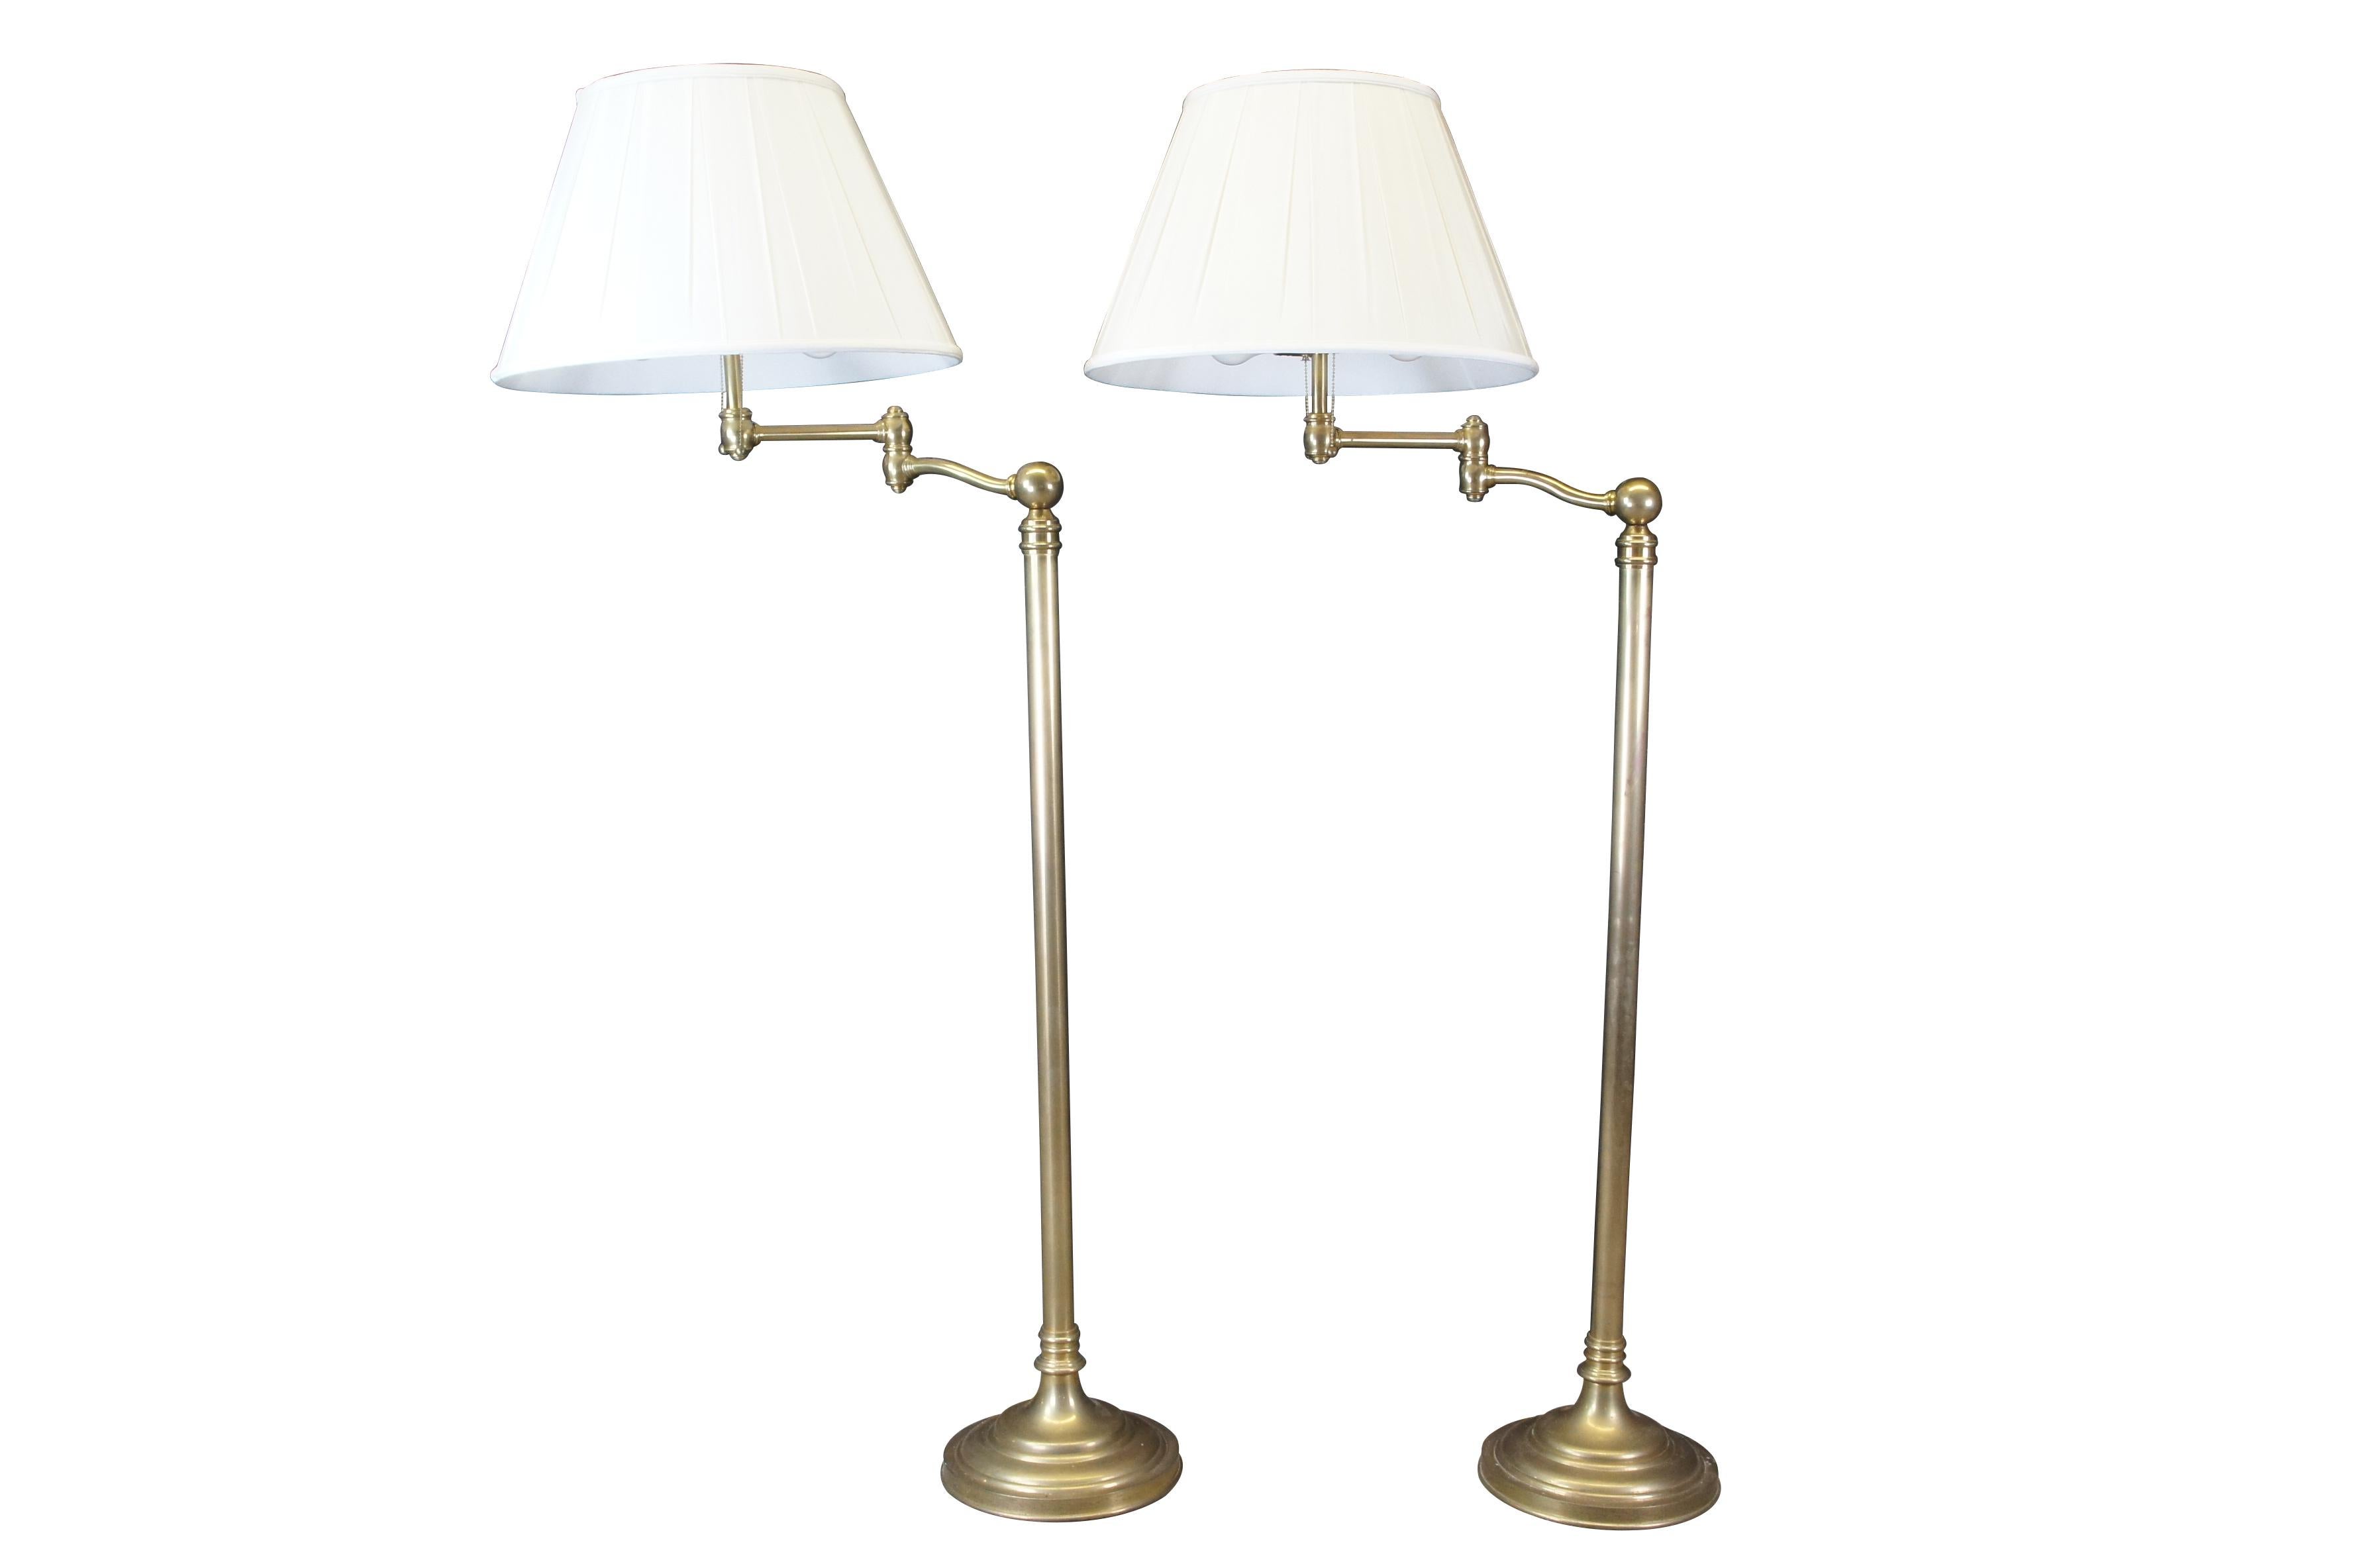 2 Visual Comfort Sargent Swing Arm Floor Lamp, Designed by Ralph Lauren.  Caractéristiques Laiton antique naturel avec abat-jour en soie.  La lampe a deux lumières, chacune avec son propre interrupteur à tirette.

Dimensions :
64 